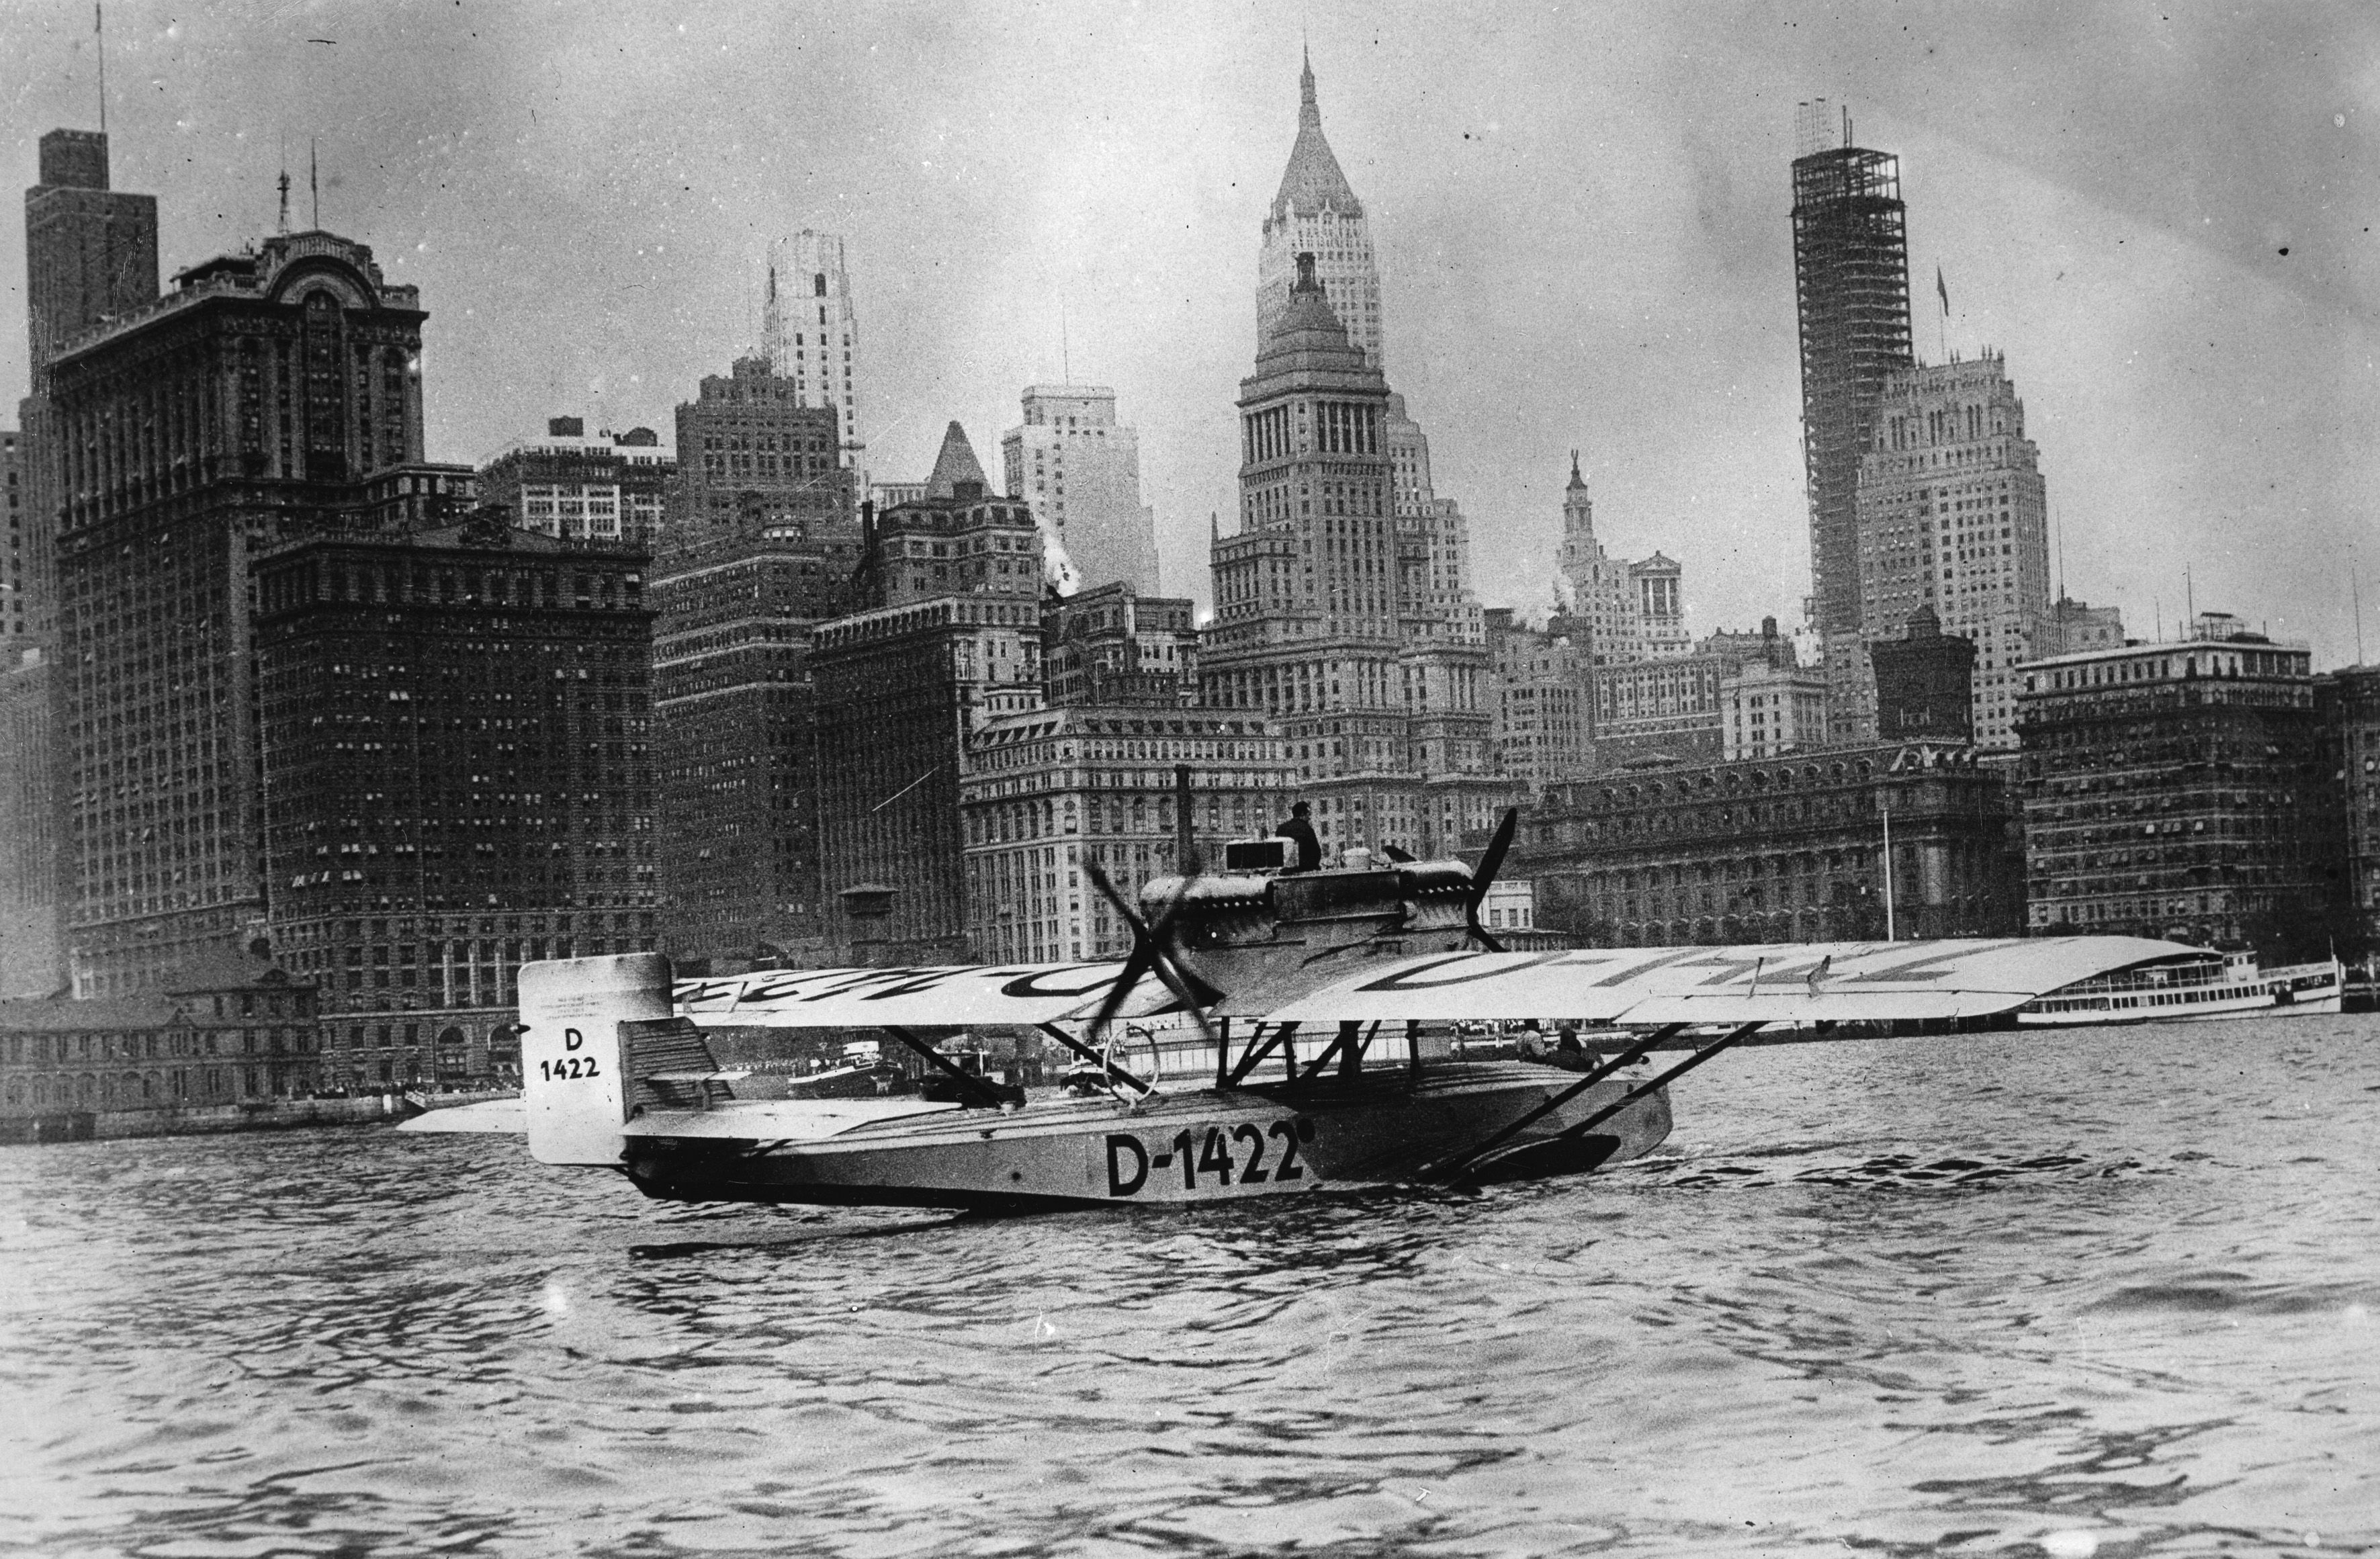 GettyImages-167527291 - German Trans-Atlantic flyers arriving in New York. Capt. Wolfgang von Gronau